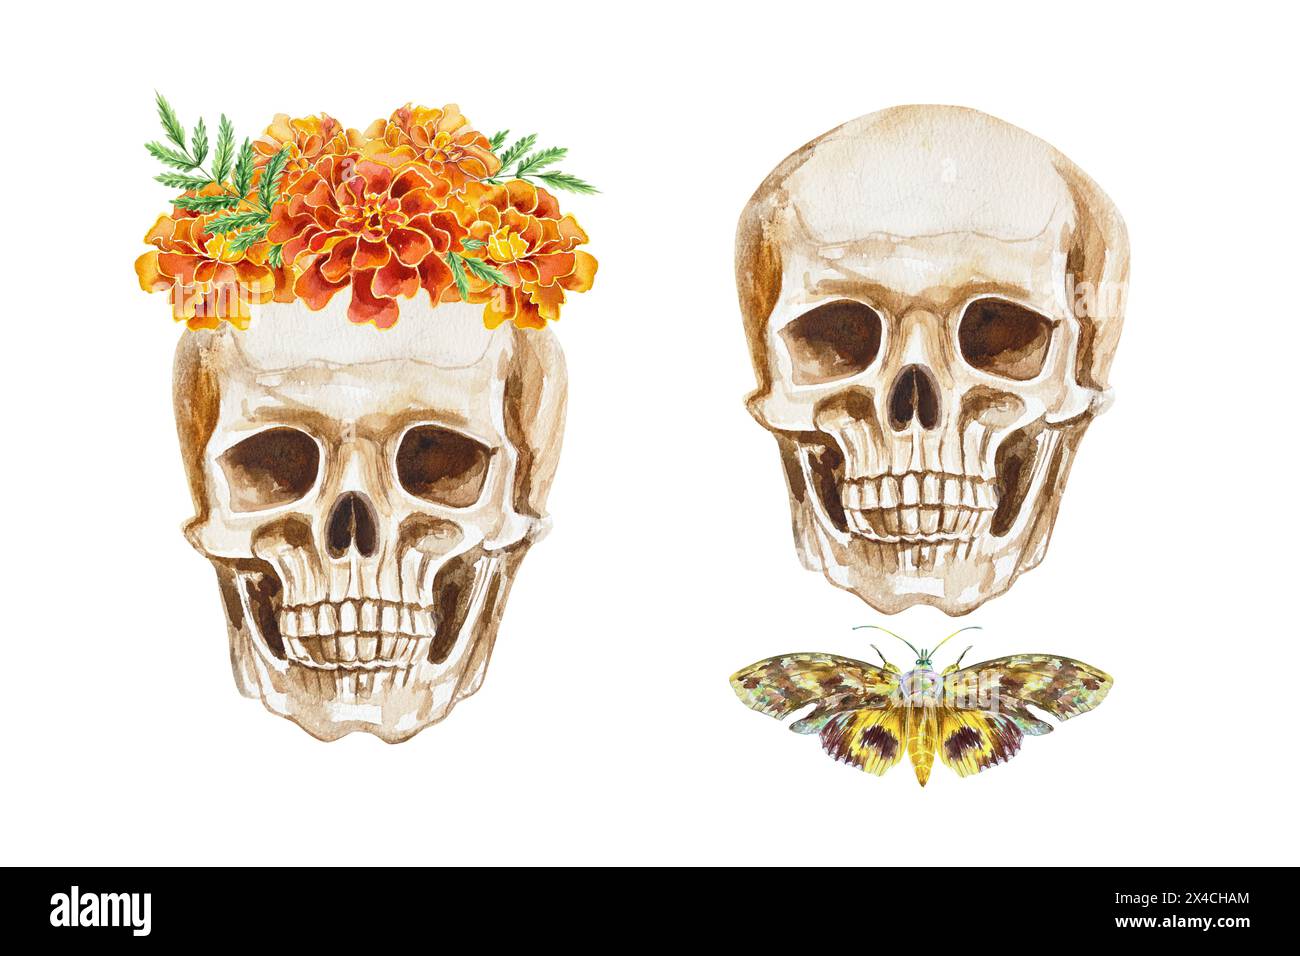 Cranio umano con corona floreale, falena e farfalla. Illustrazione ad acquerello disegnata a mano isolata su sfondo bianco. Halloween e il giorno del Foto Stock